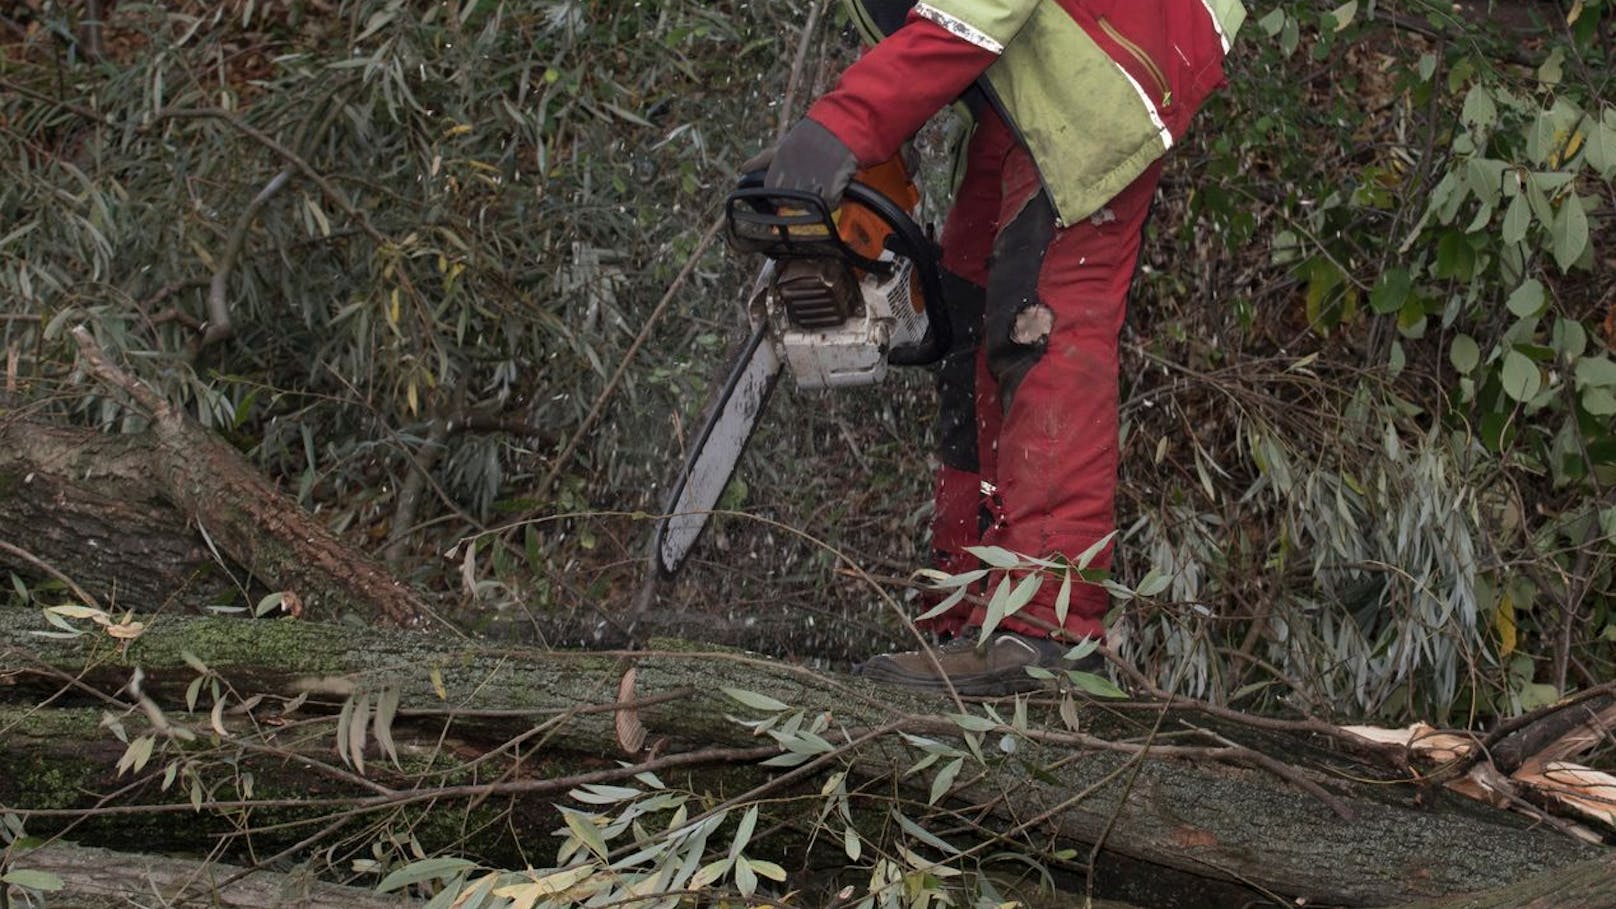 Mann bei Arbeiten im Wald von Baum erschlagen